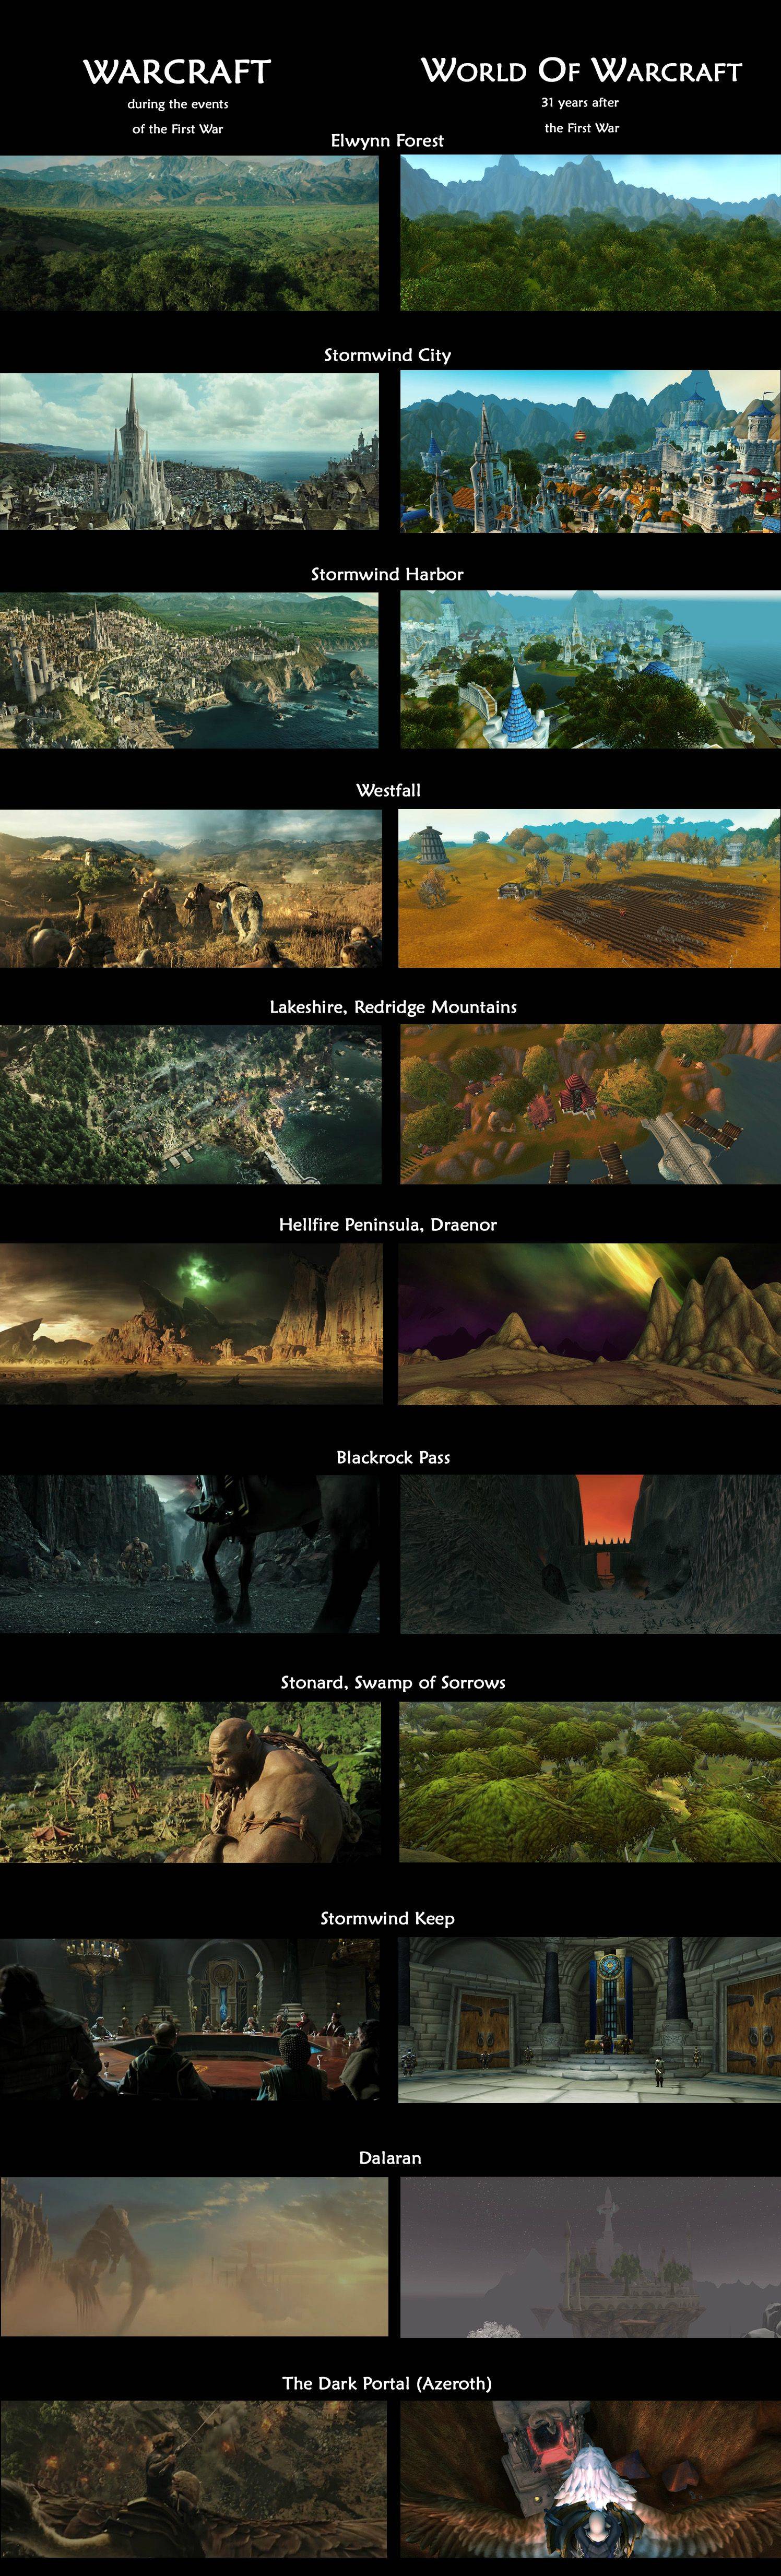 Warcraft film e videogioco